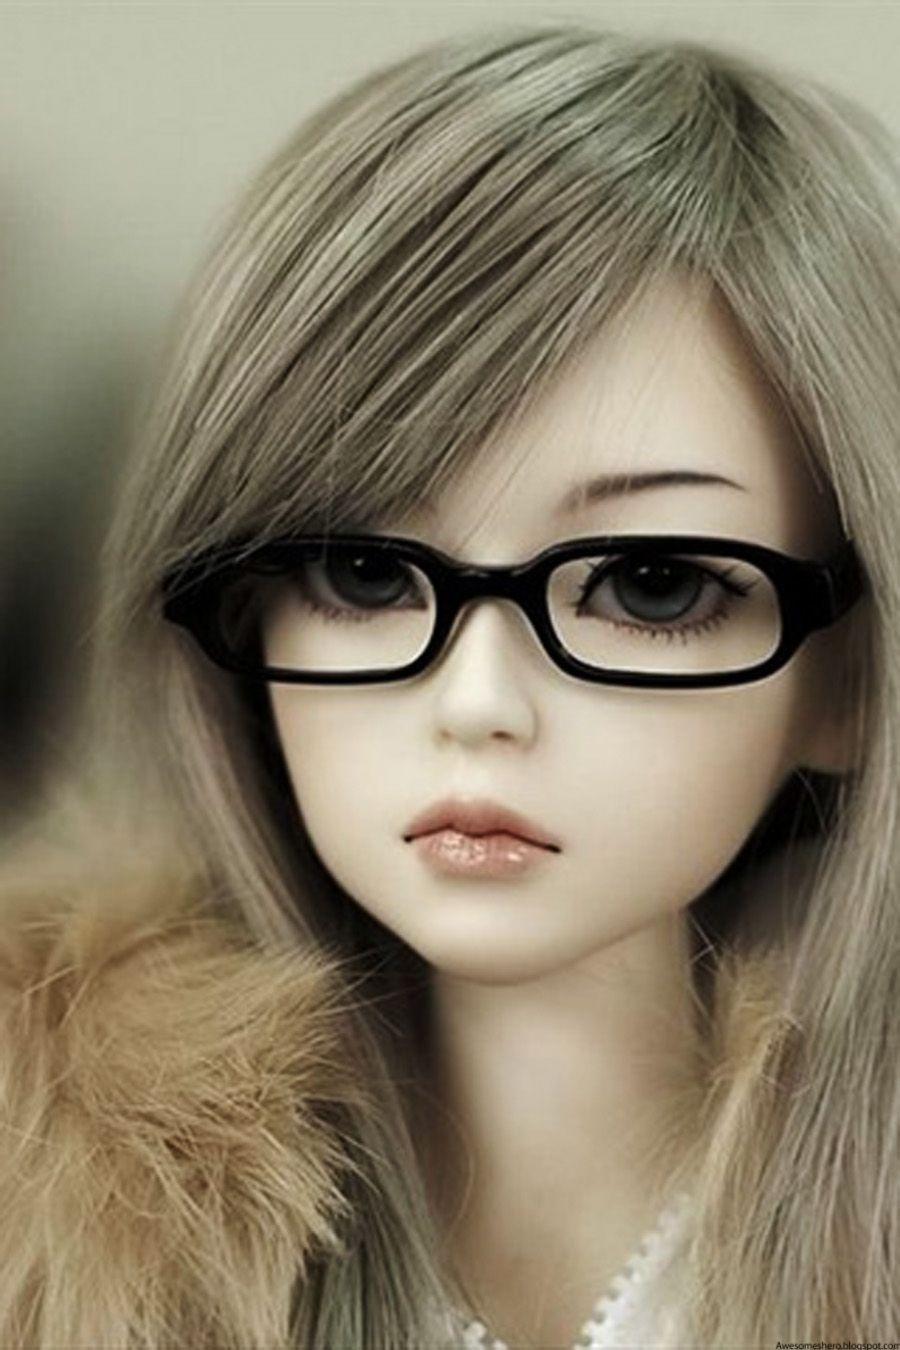 barbie doll dp for whatsapp